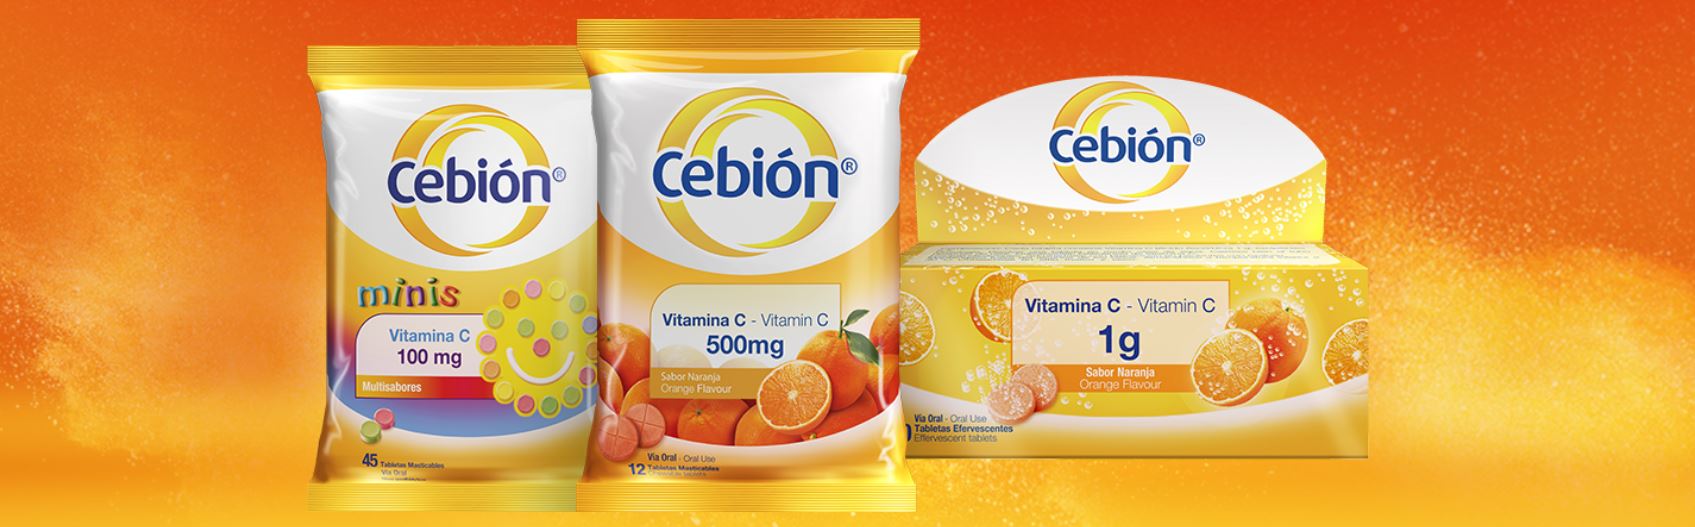 CEBIÓN Products